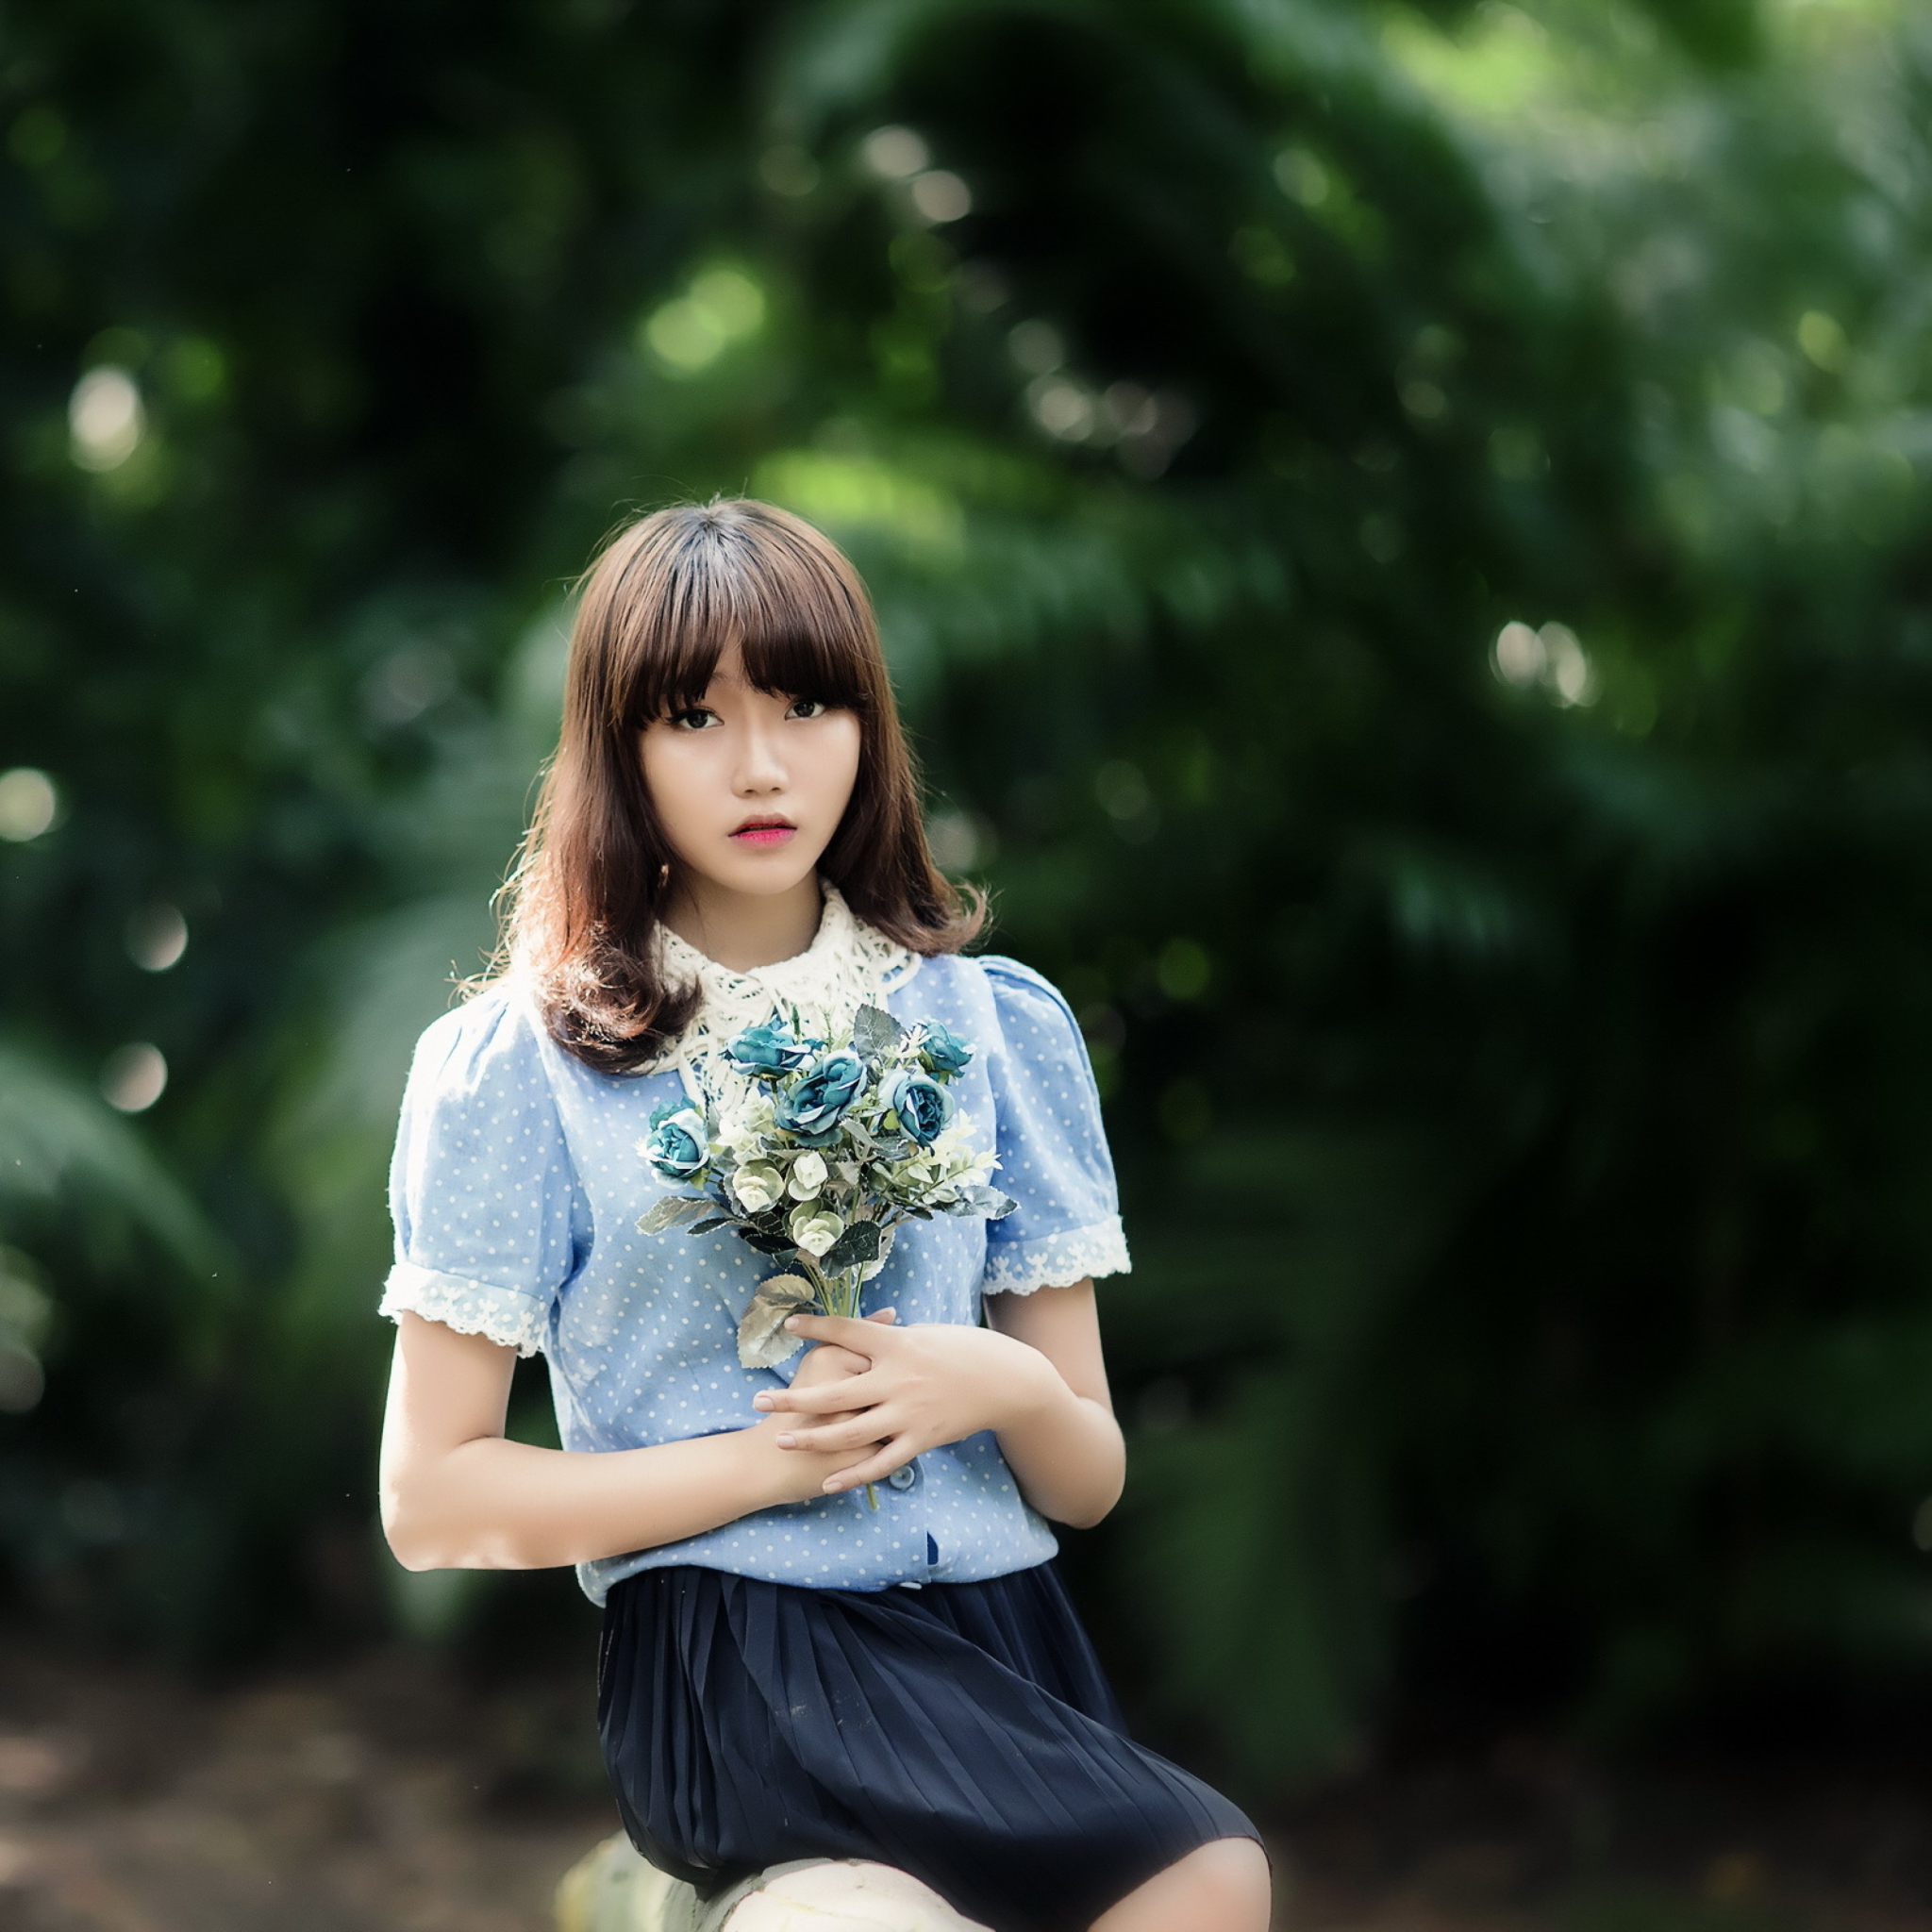 Cute Asian Model With Flower Bouquet screenshot #1 2048x2048